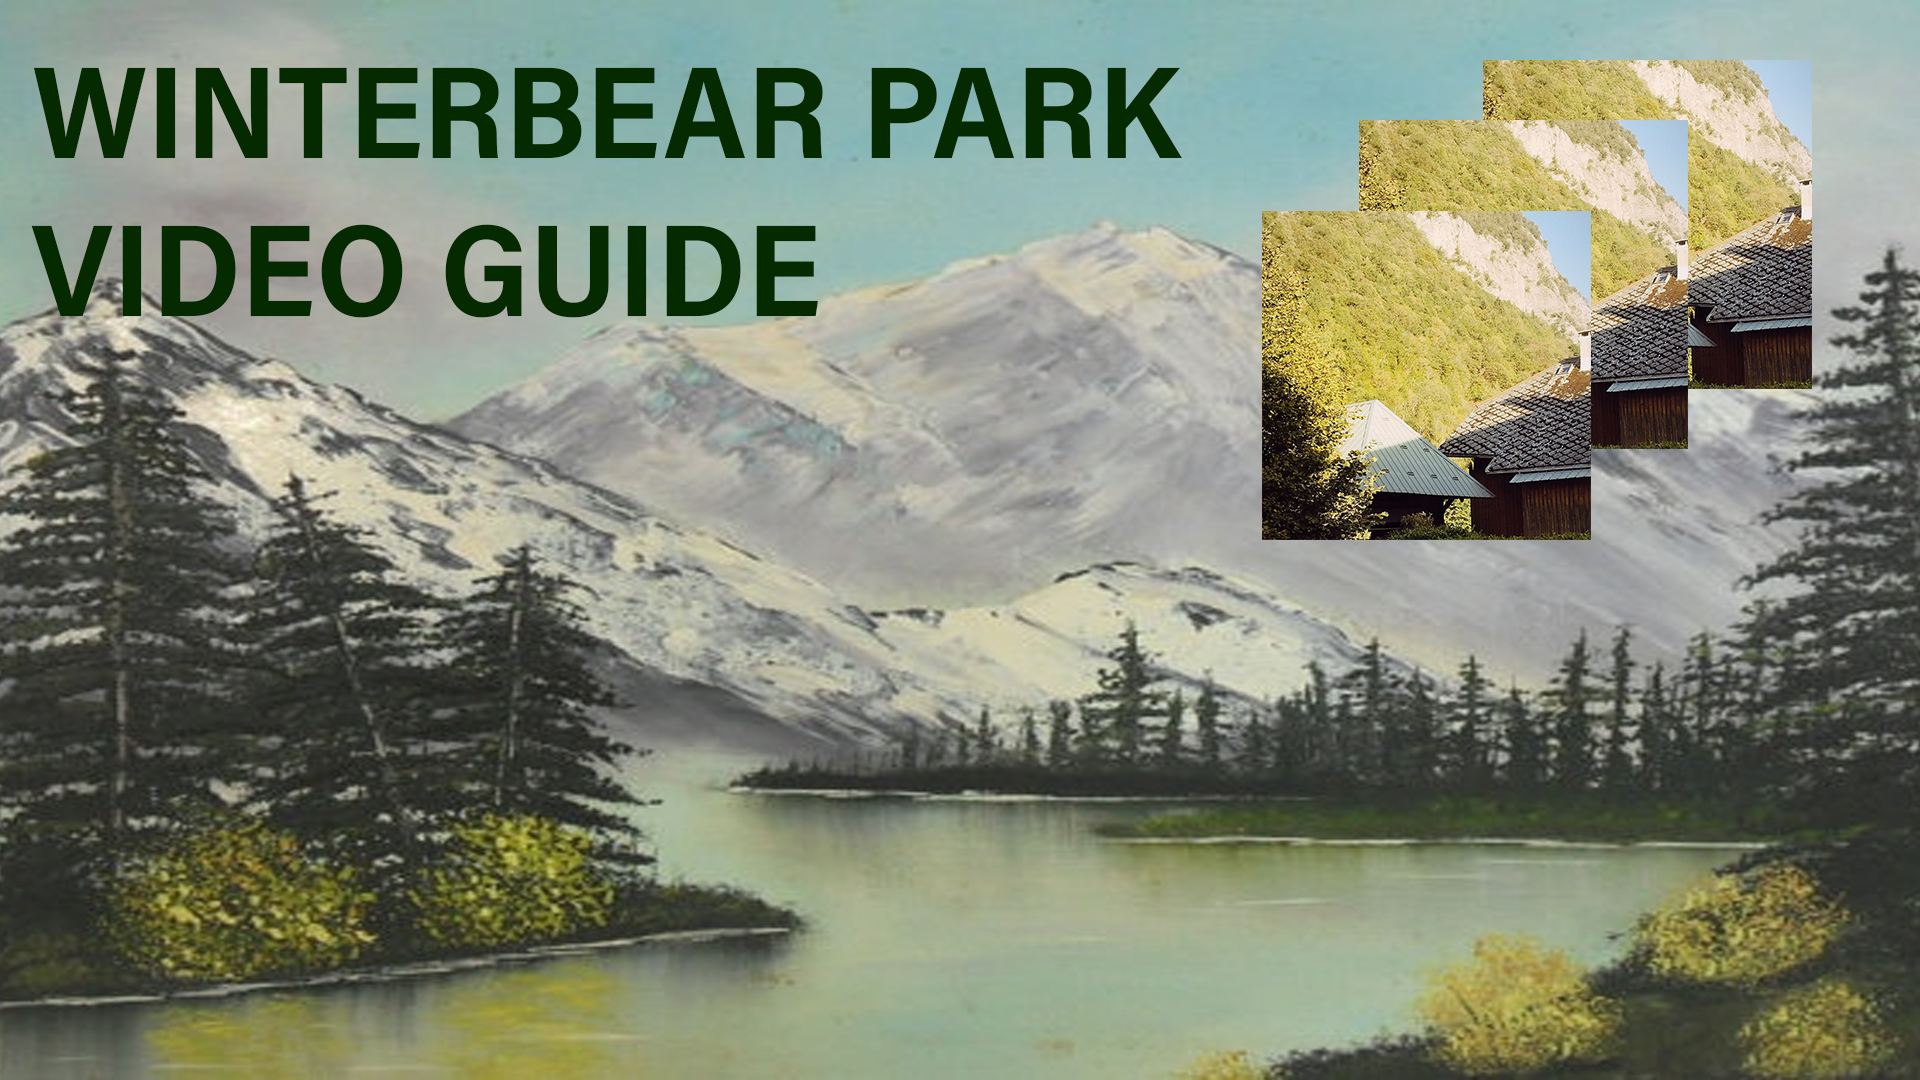 Winterbear Park Video Guide